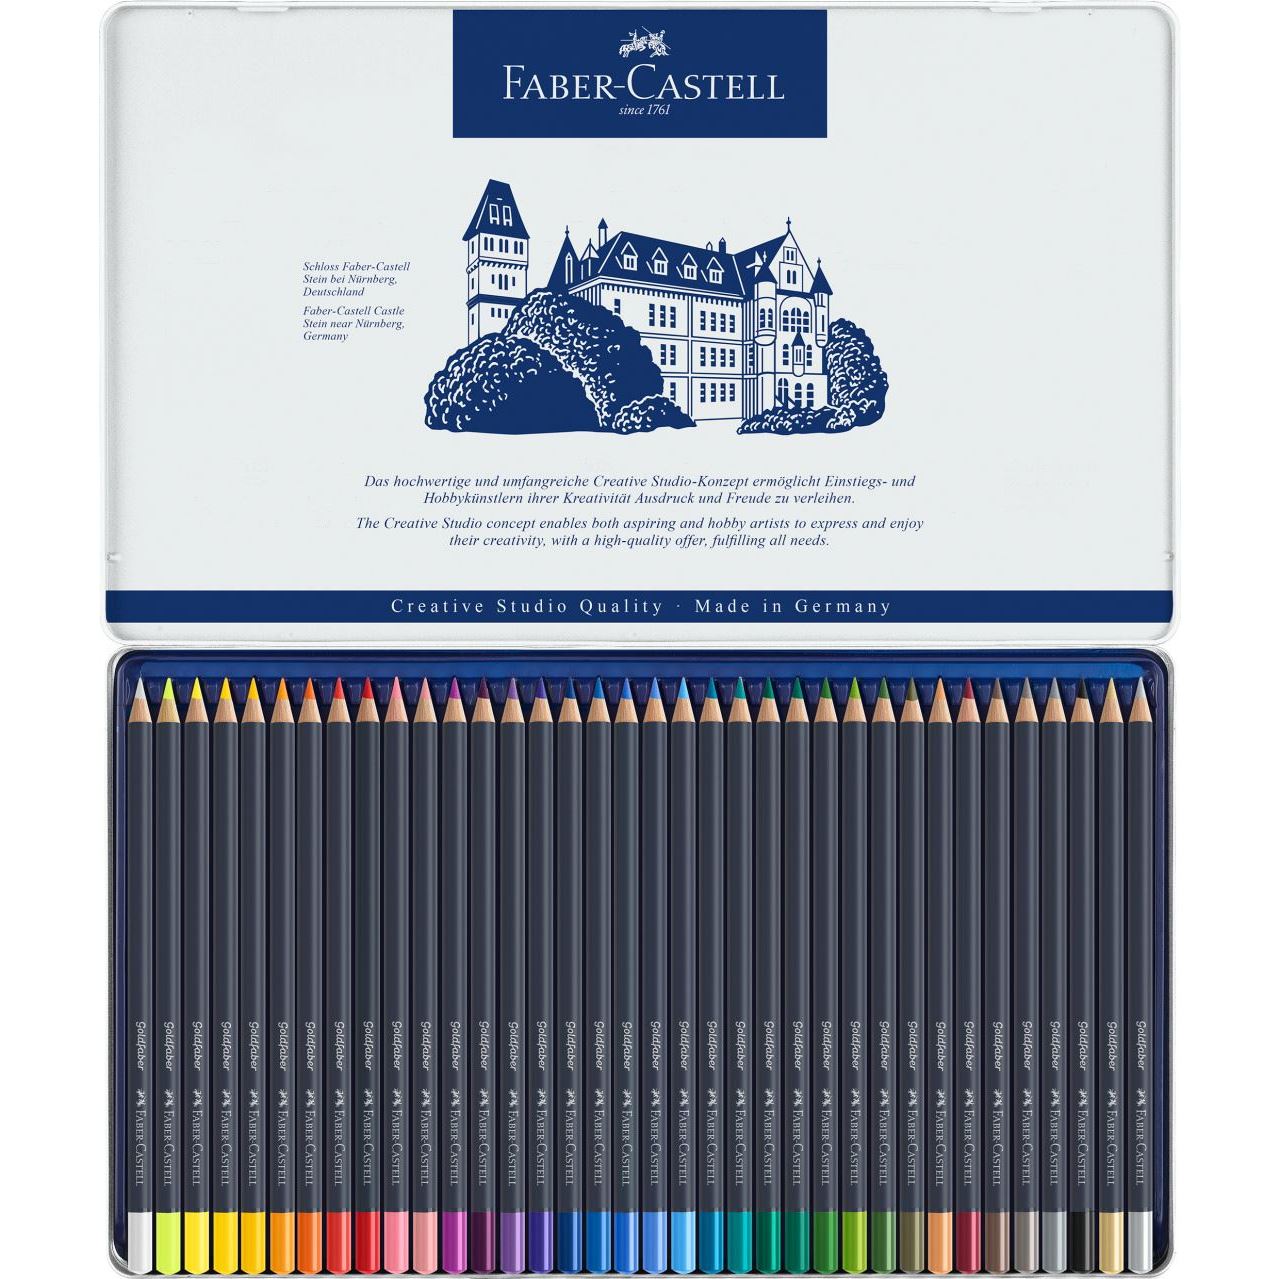 Faber Castell Goldfaber Colour Pencil Sets - Wyndham Art Supplies